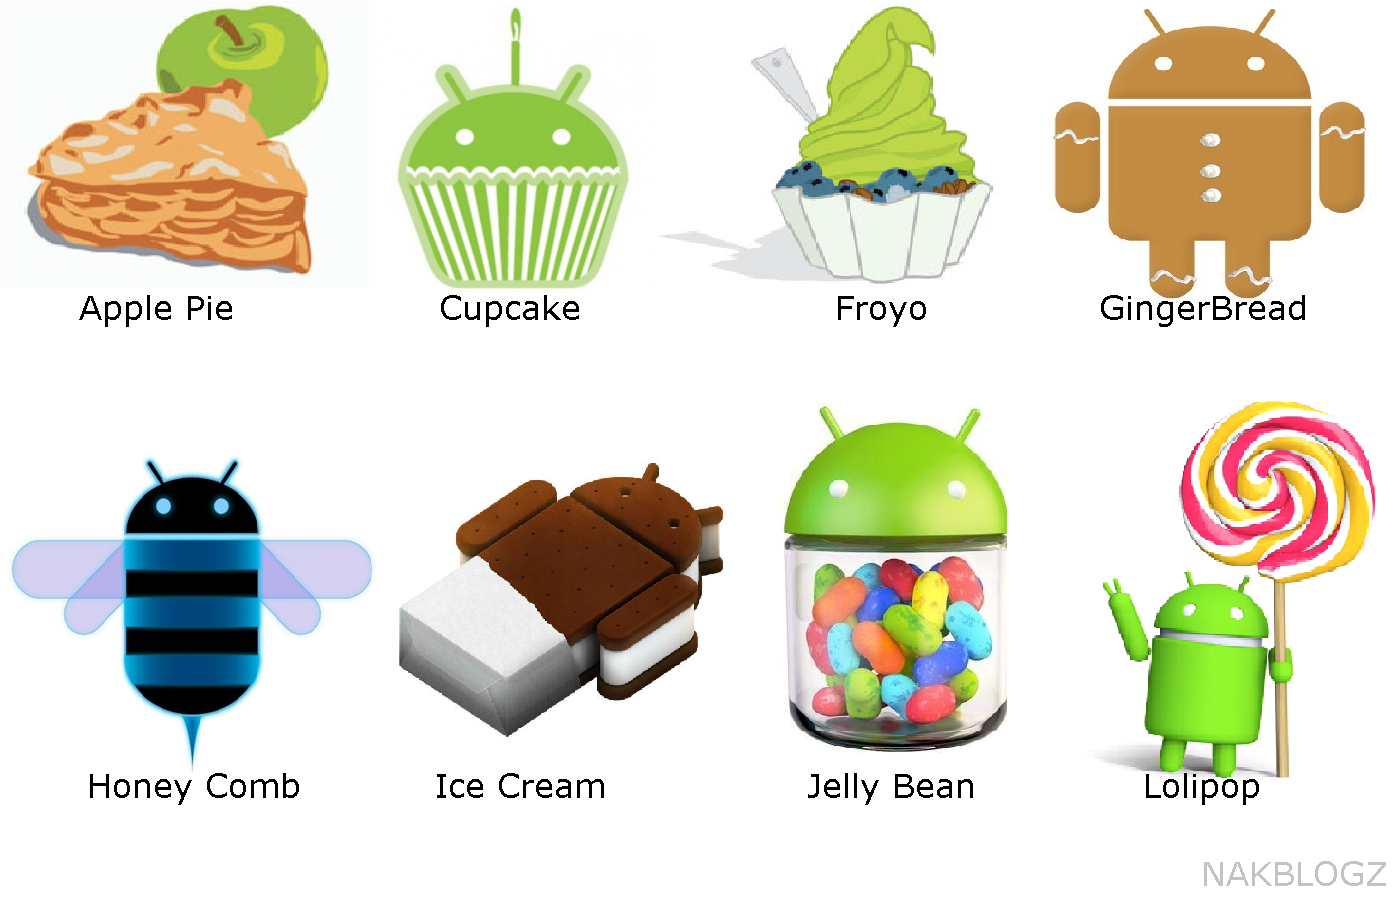 Алиса старые версии андроид. Андроид 3.0. Android 3.0 Honeycomb. Android Ice Cream Sandwich. Android 4.0 Ice Cream Sandwich.